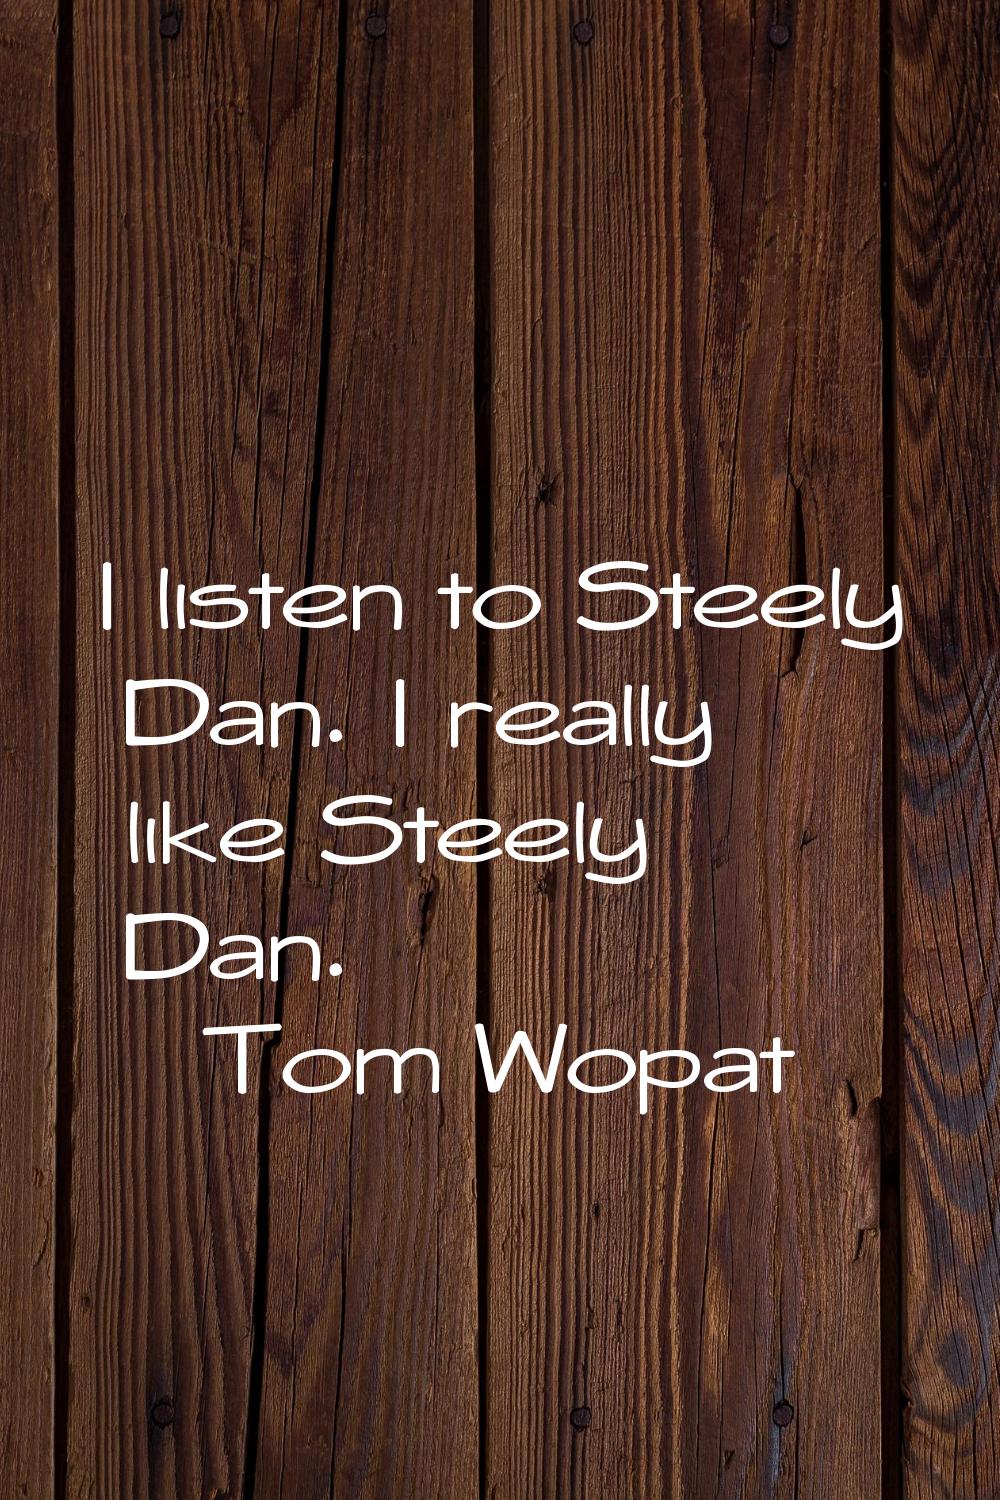 I listen to Steely Dan. I really like Steely Dan.